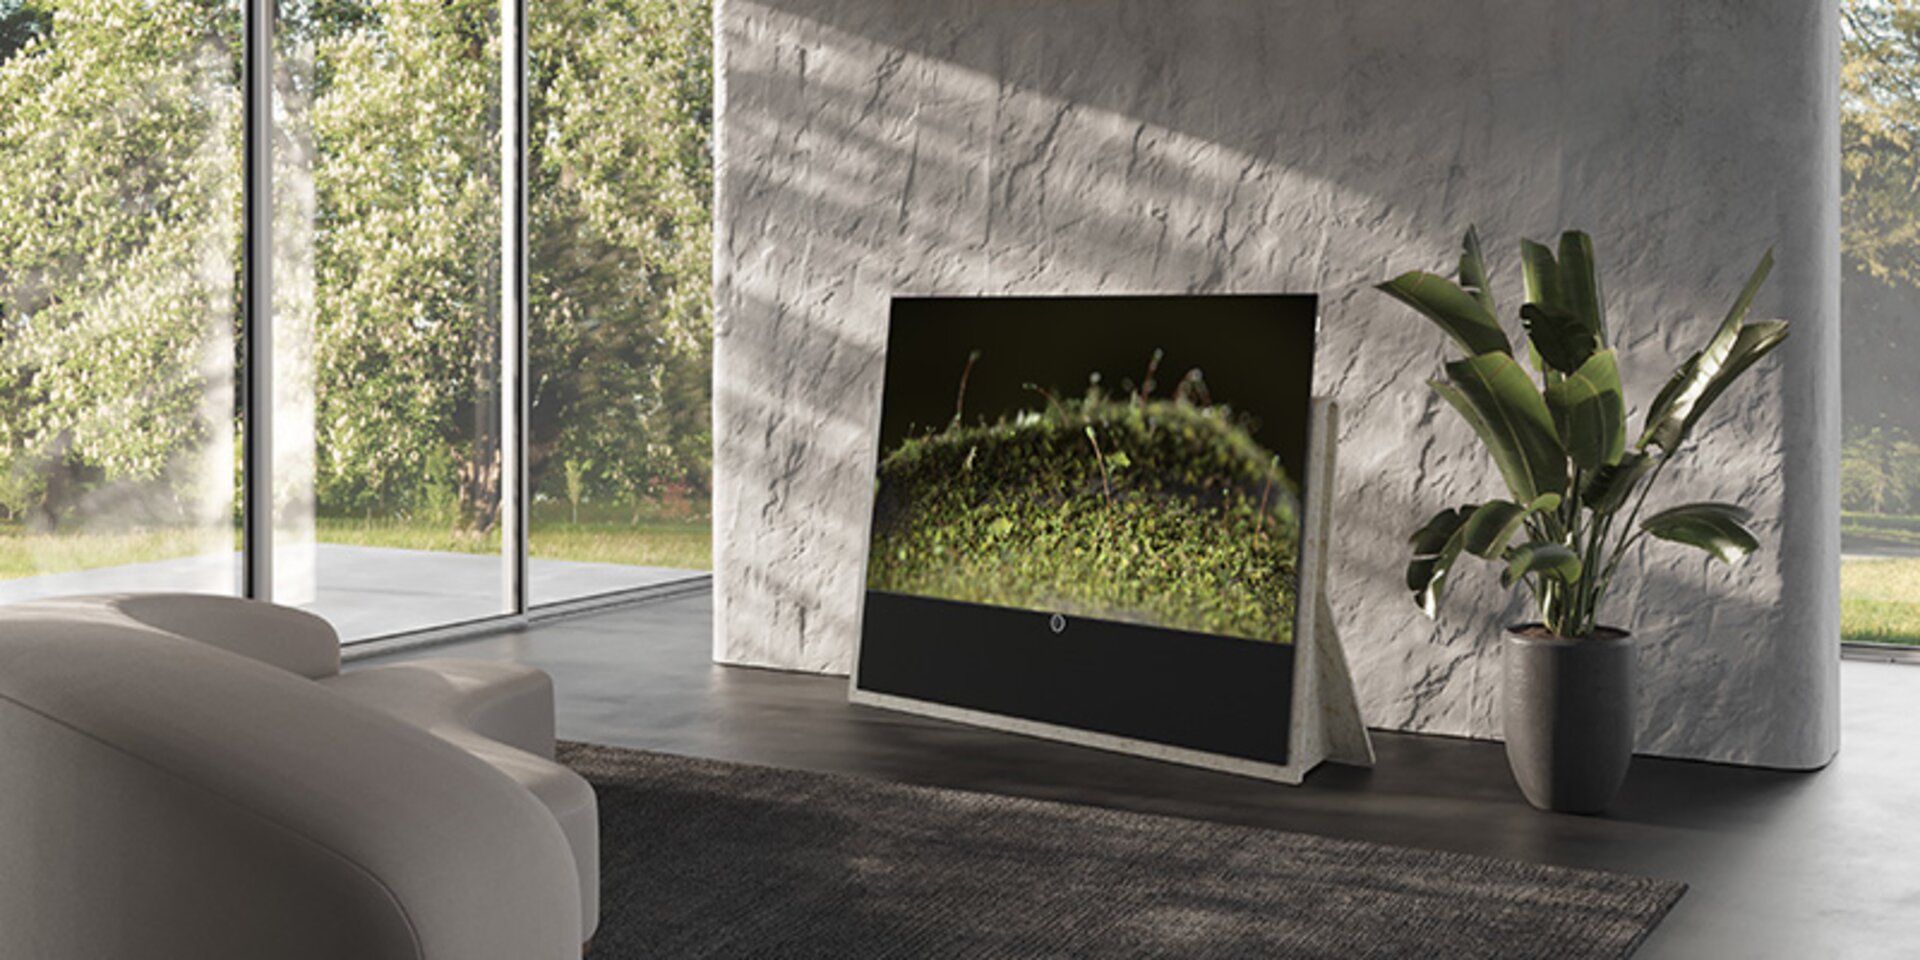 MODERNSTE TV-TECHNOLOGIE. BILDQUALITÄT MADE IN GERMANY. Hochkontrastbilder und ein beeindruckendes Farbspektrum: Dank ultra-hochauflösendem 4K OLED, HLG, HDRIO und Dolby VisionTM genießen Sie mit den bereits ab Werk kalibrierten TV-Modellen Loewe iconic.65 und Loewe iconic.55 in den Varianten SL5 und SL7 perfektes Heimkino.